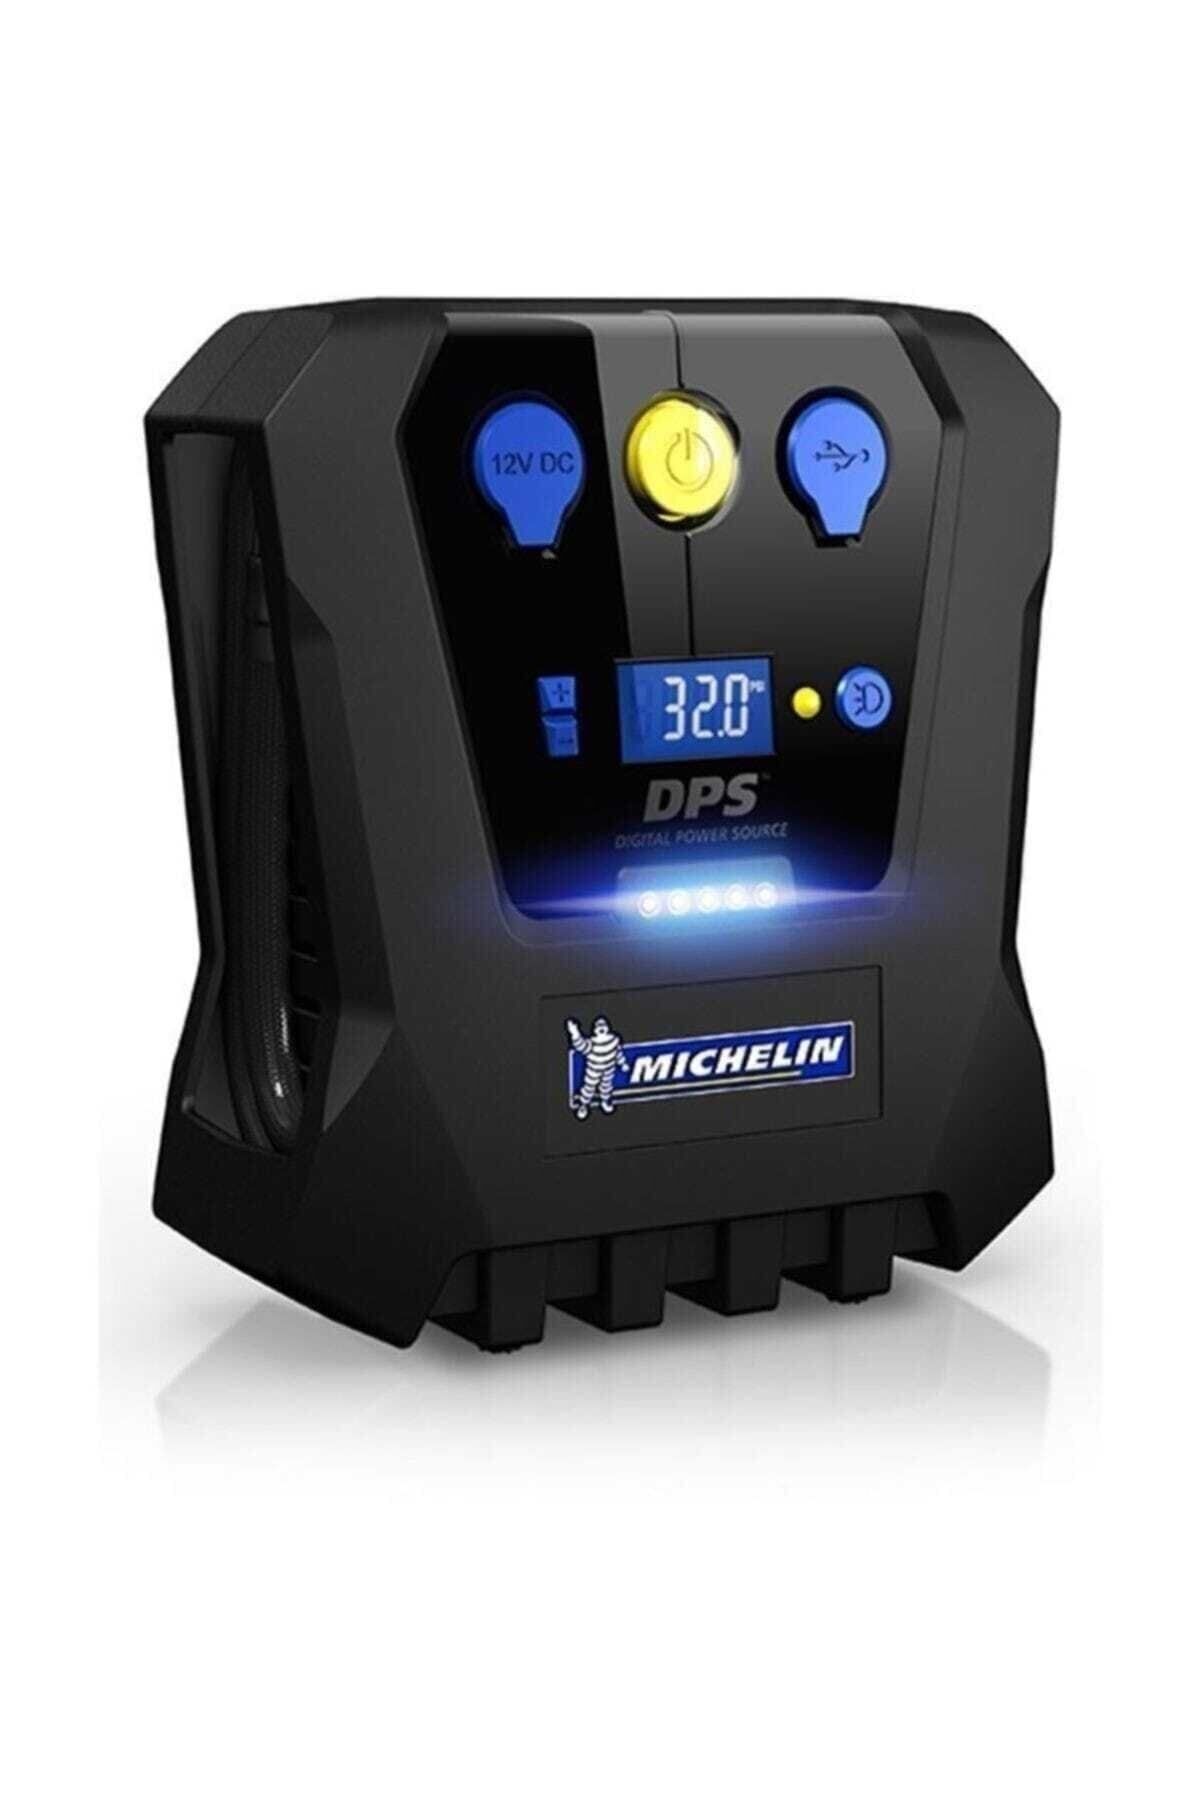 Michelin Mc12266 12volt 120 Psı Dijital Basınç Göstergeli Hava Pompası